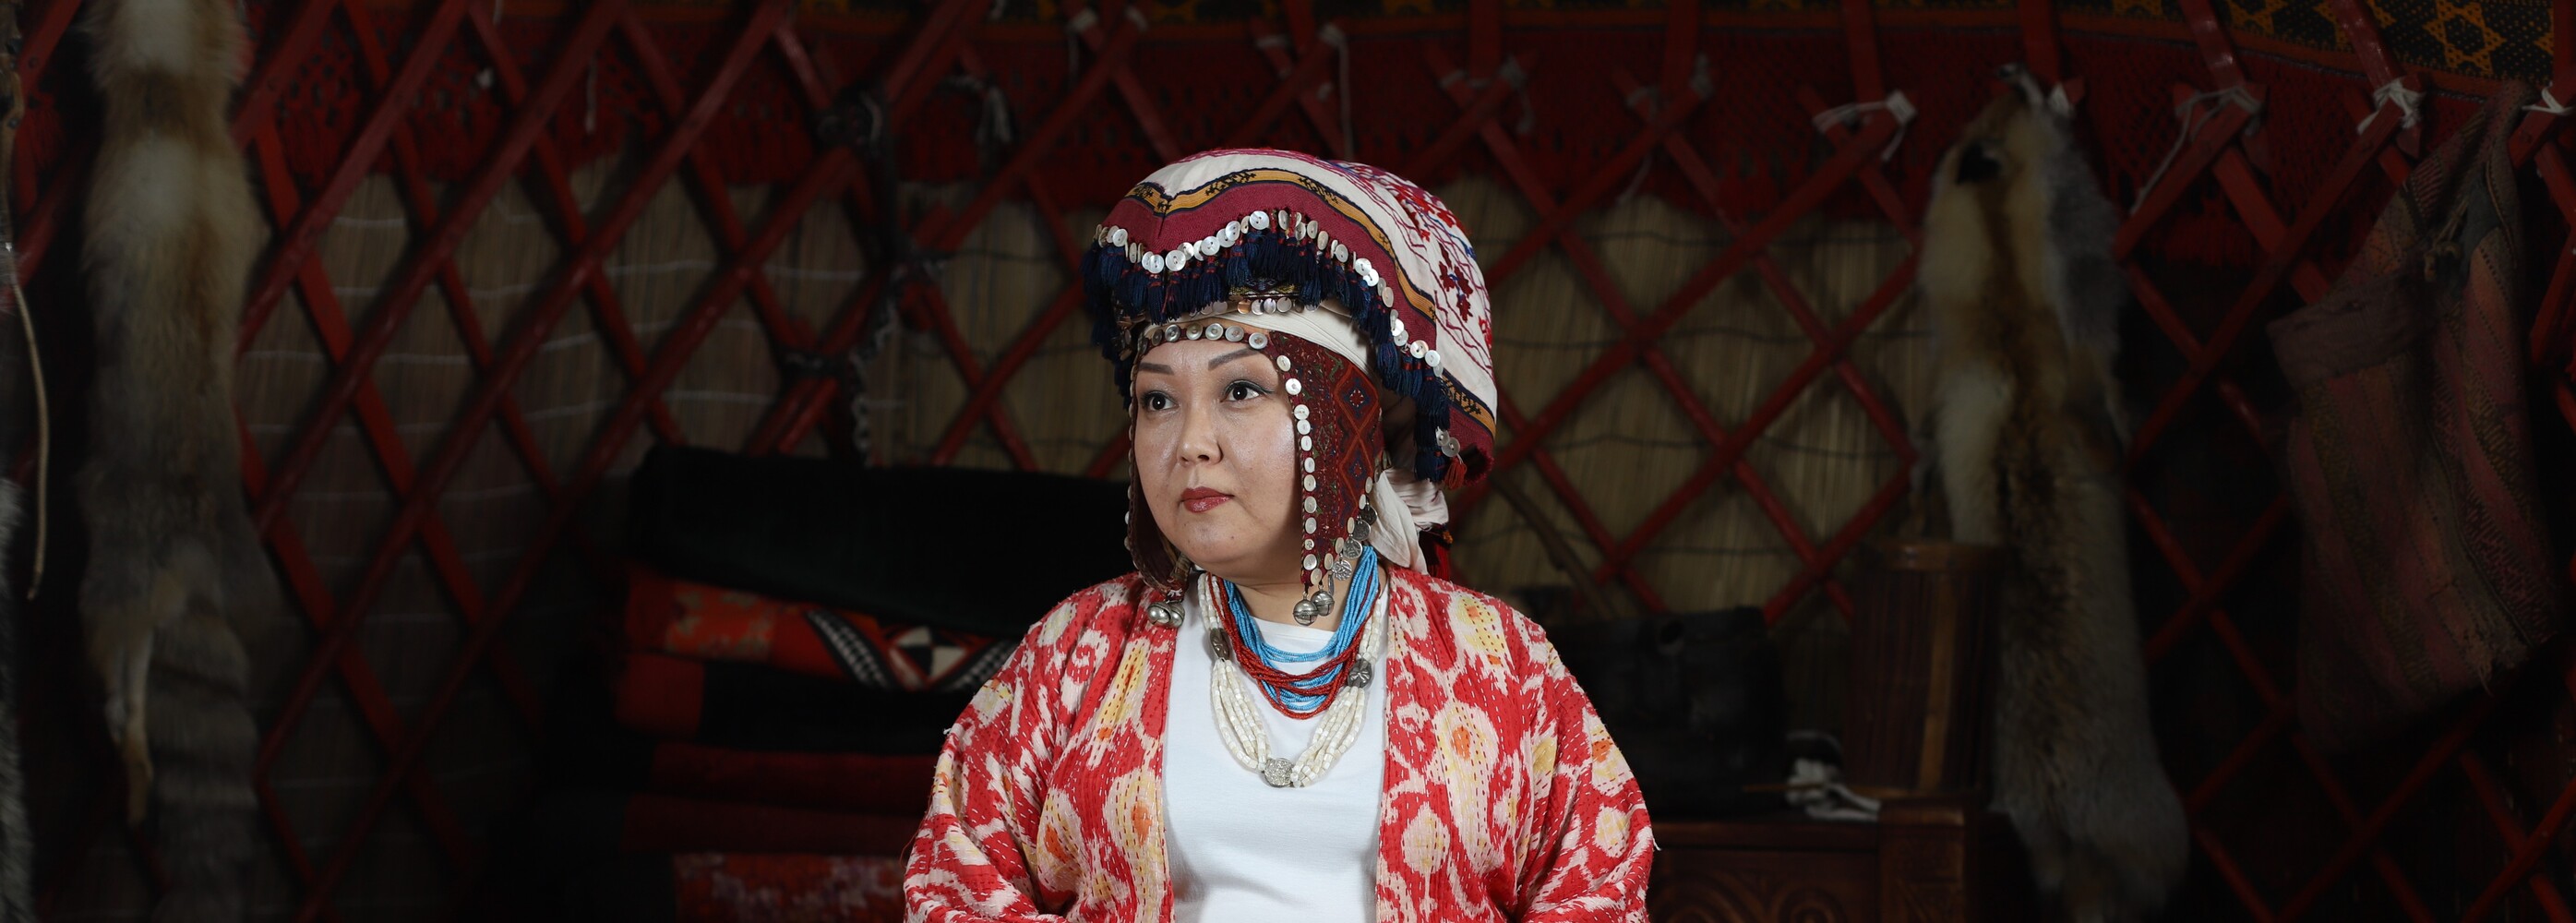 Кыргызский элечек вошел в список нематериального культурного наследия — Today.kg